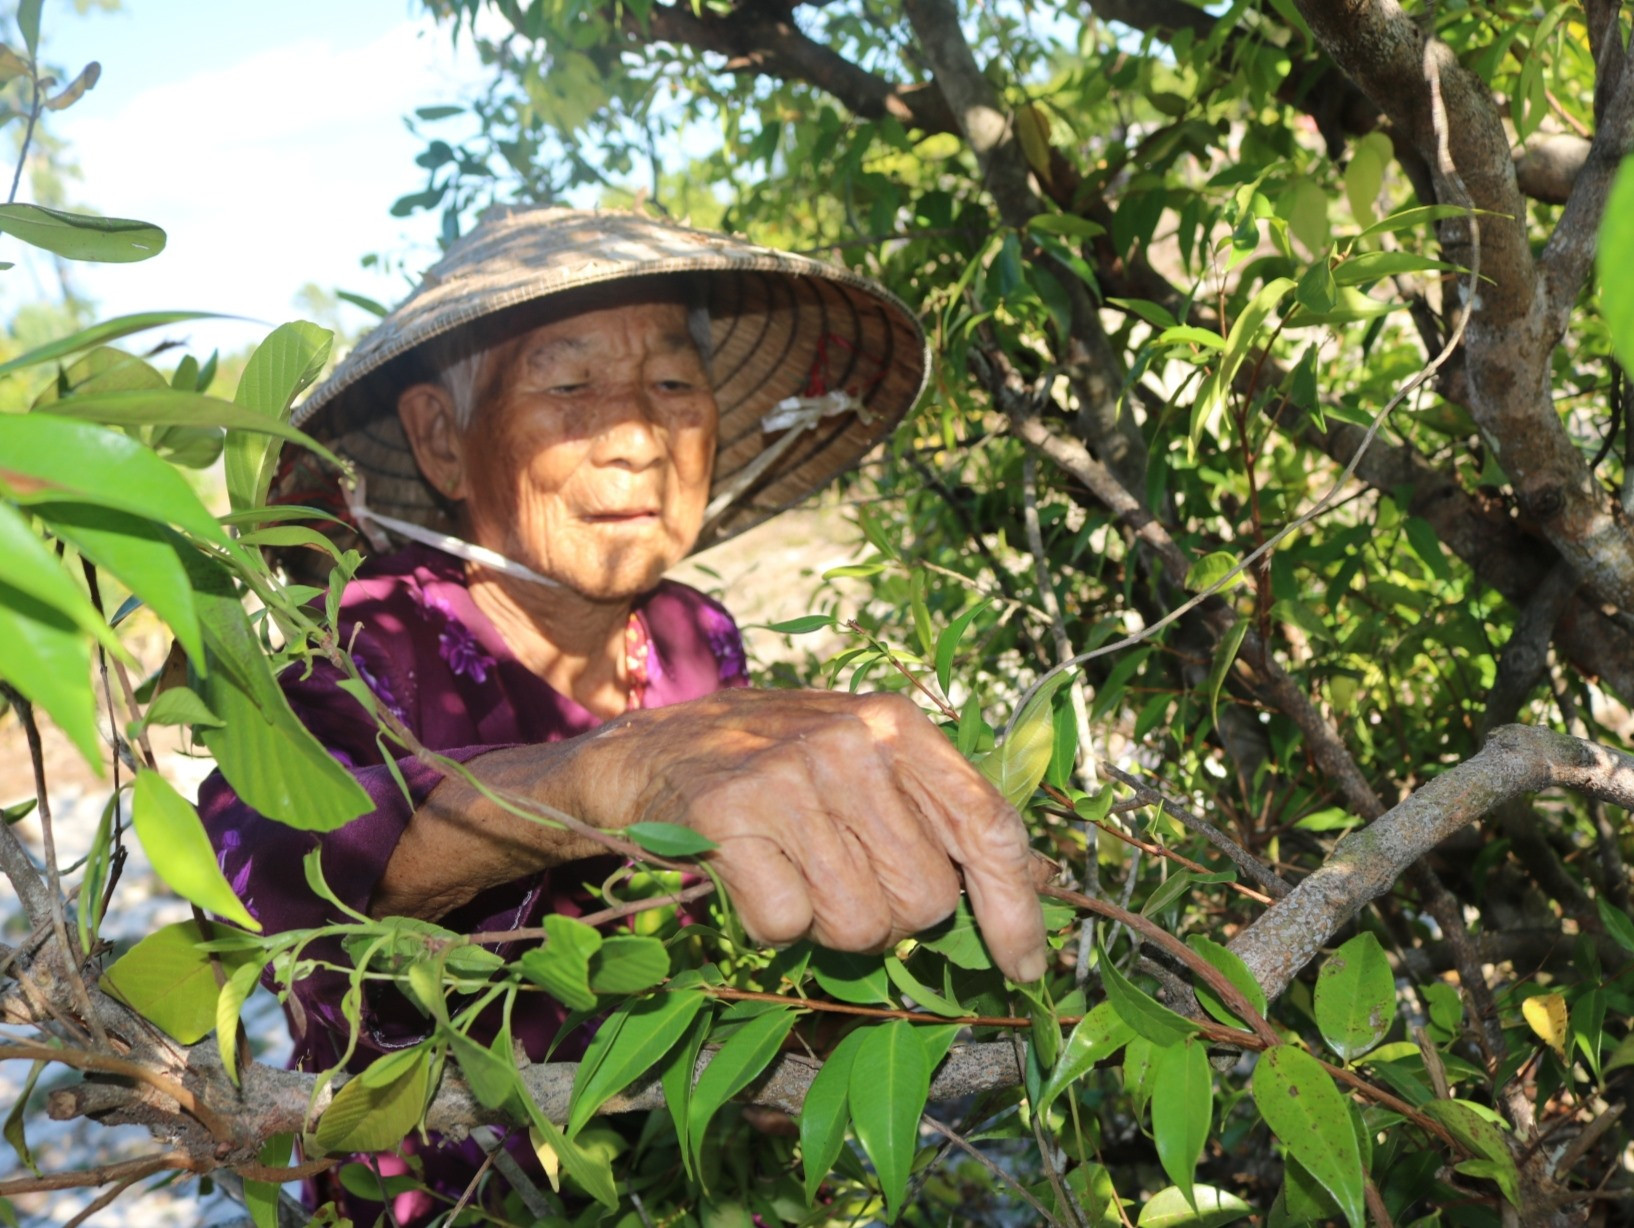 Bà Trần Thị Đào (92 tuổi) hái lá mùng Năm ở khu rừng cách nhà gần 2km. Ảnh: T.H